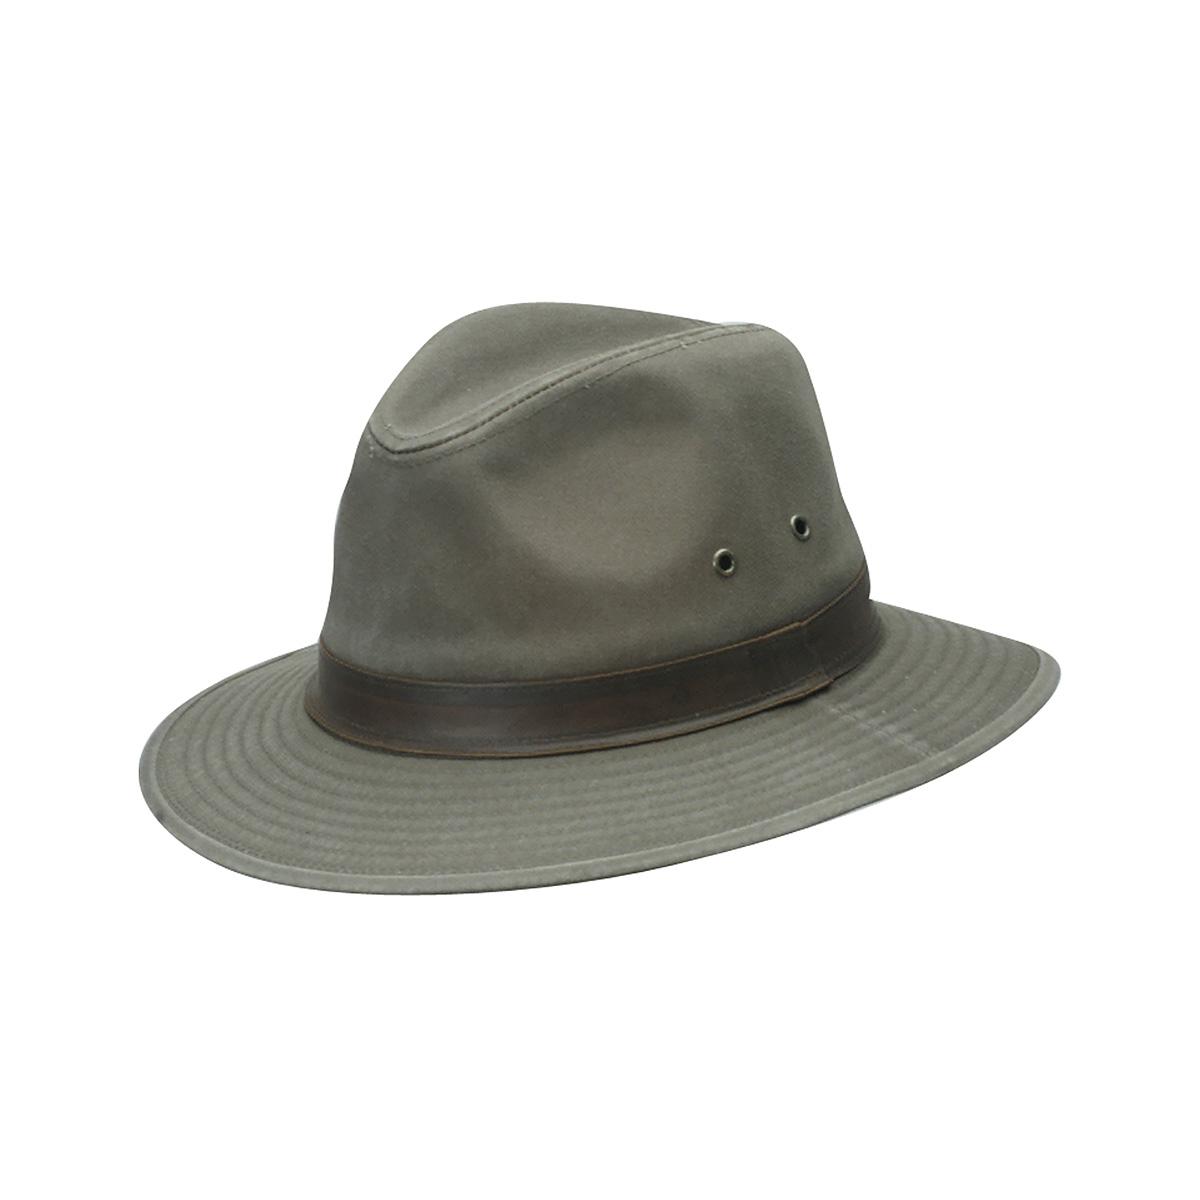 Dorfman Pacific Twill Safari Hat Khaki Medium